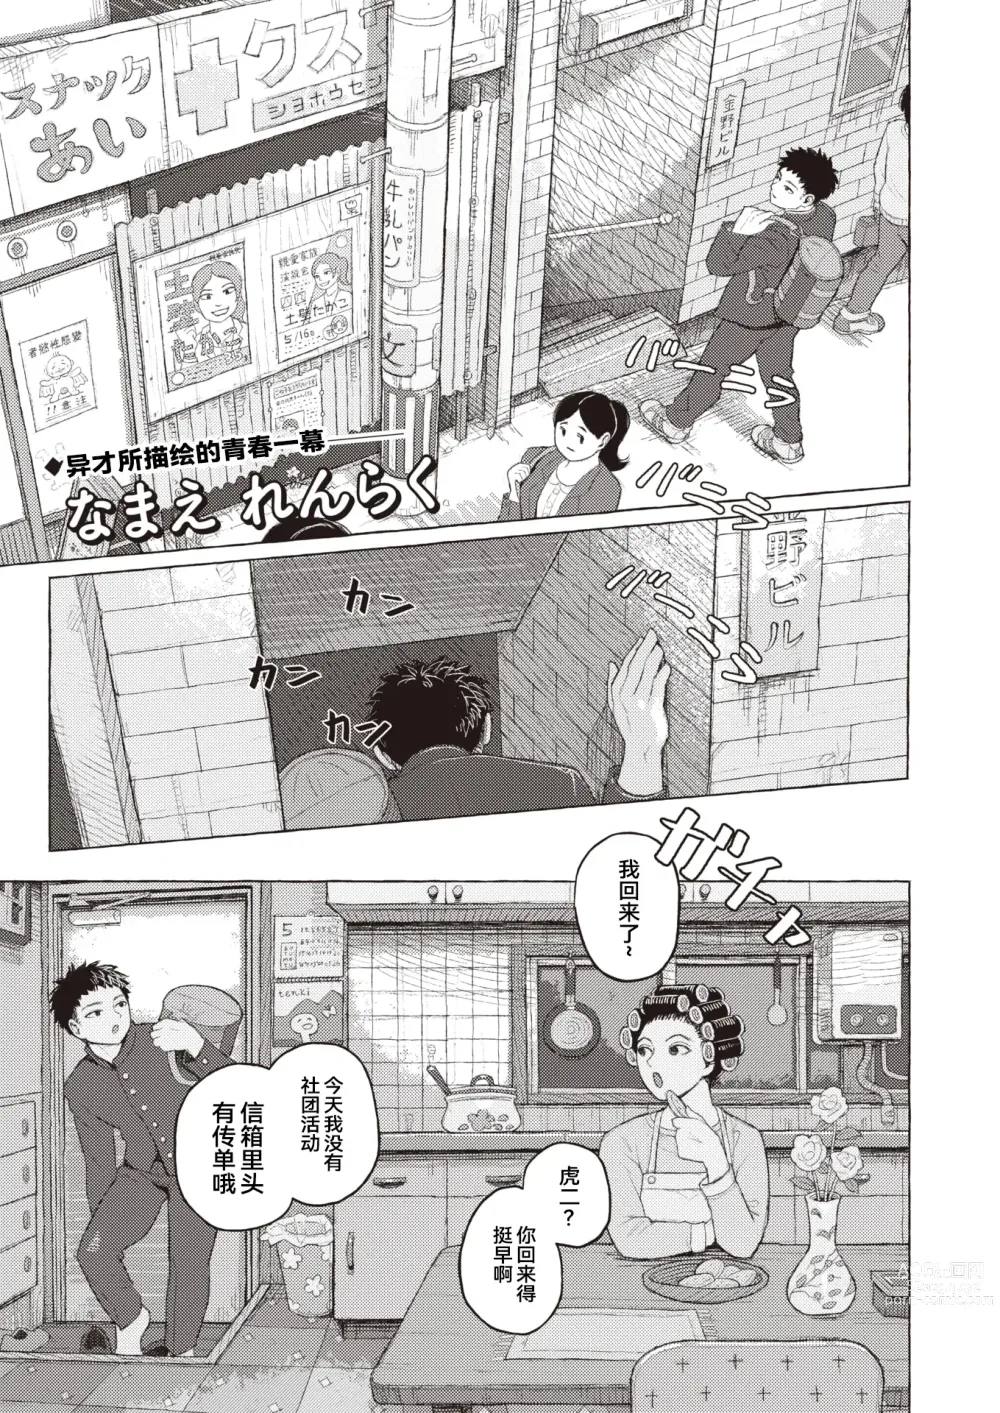 Page 1 of manga 纯情小路